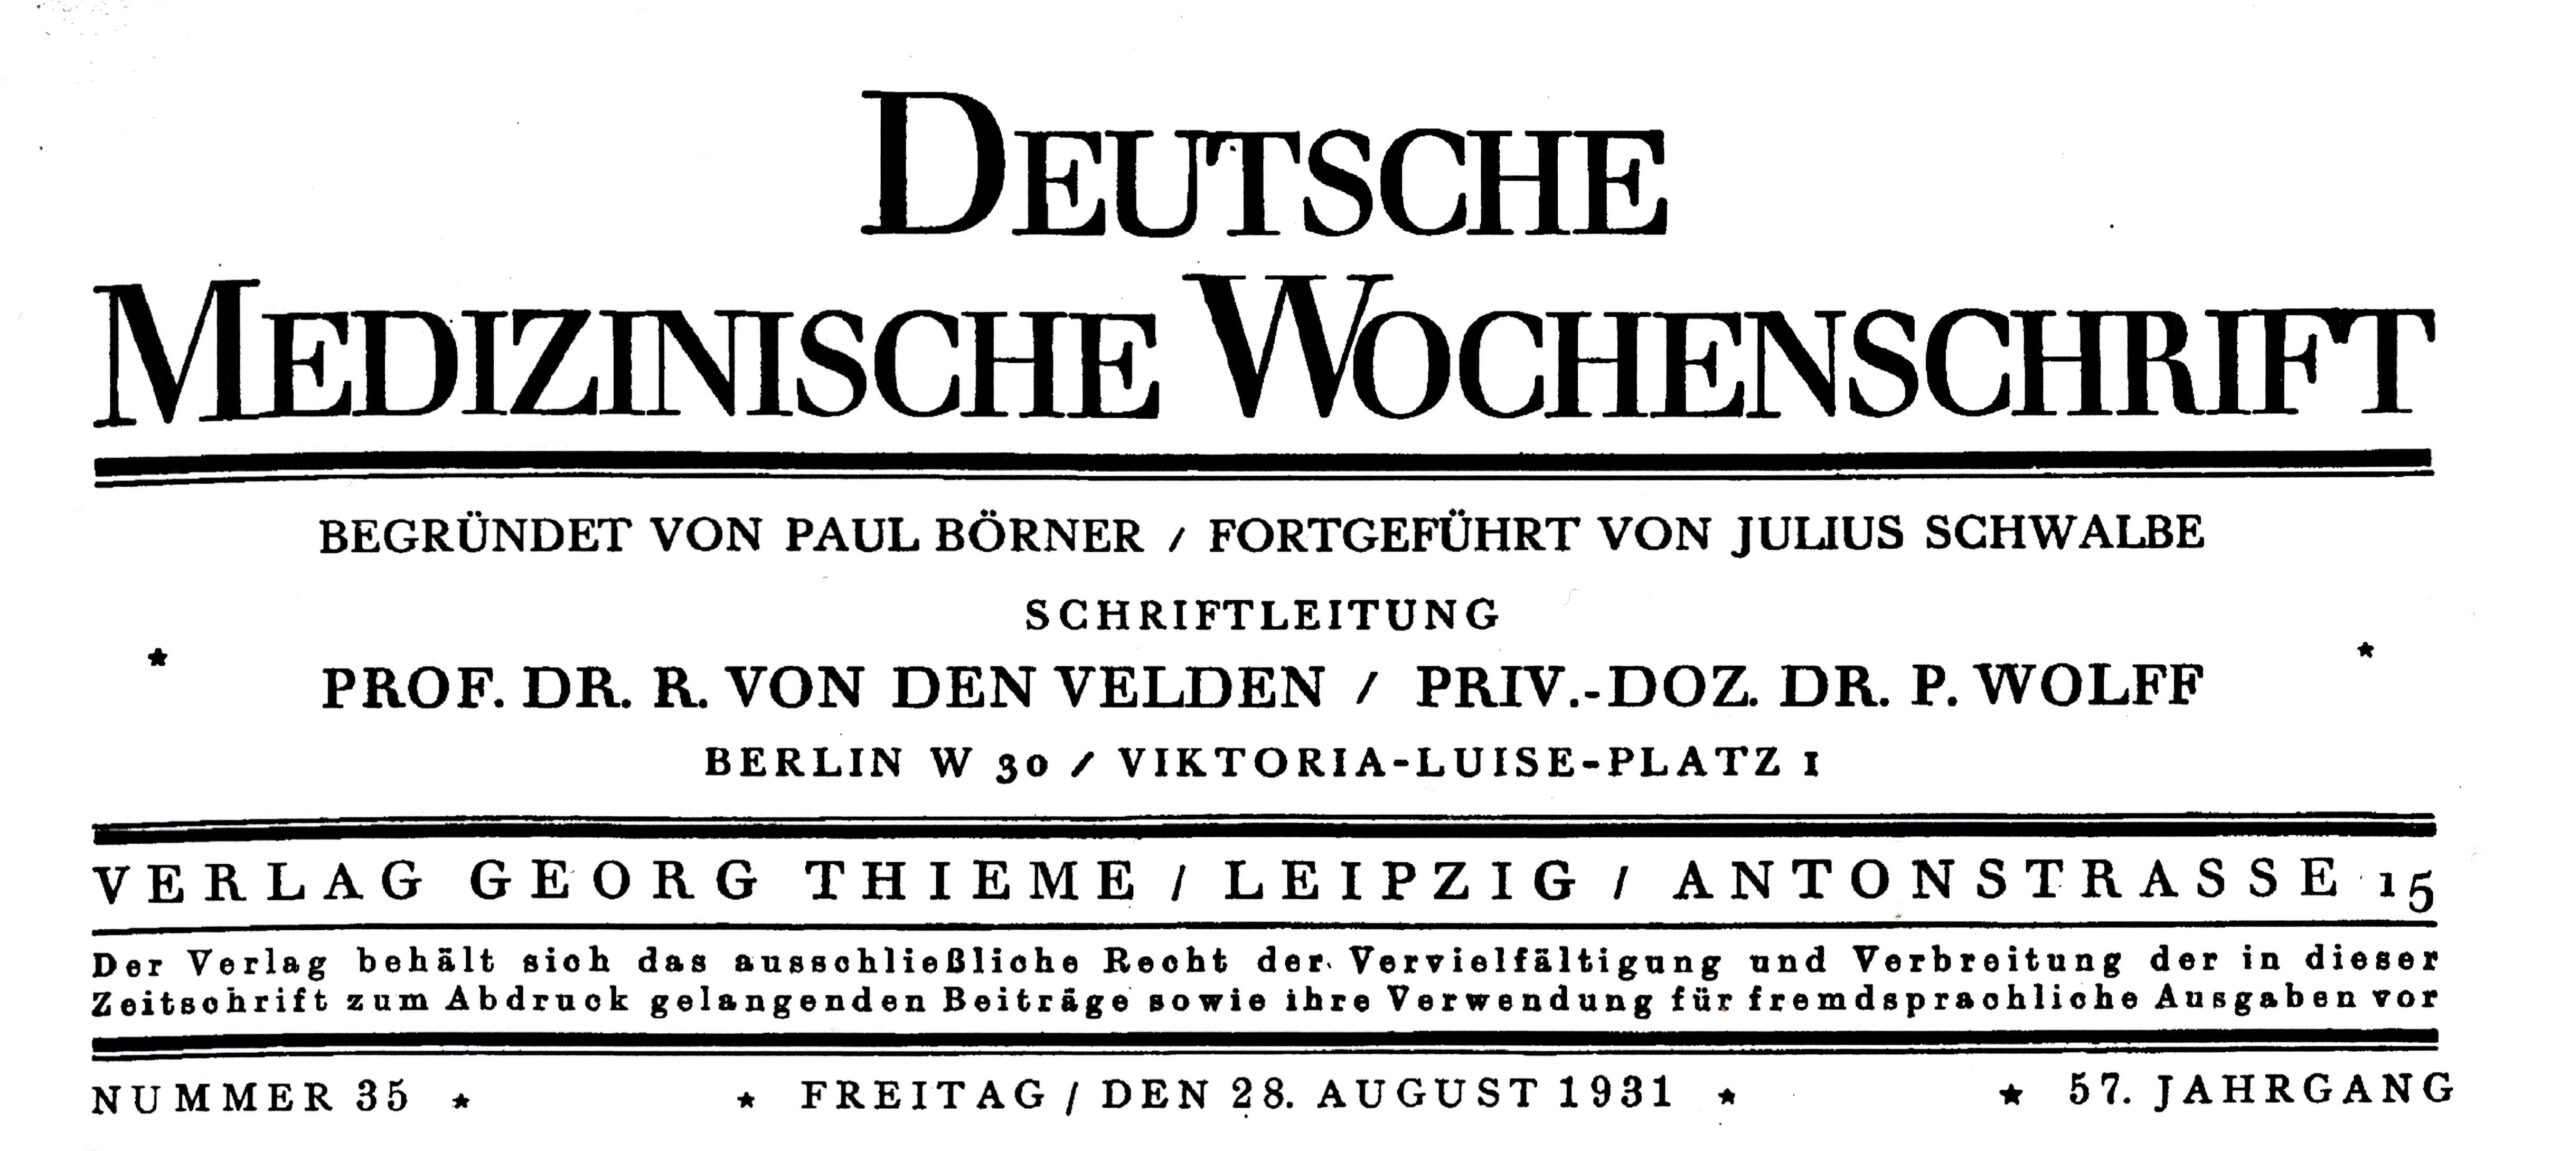 P. O. Wolff, Schriftleiter der Deutschen Medizinischen Wochenschrift bis 1933